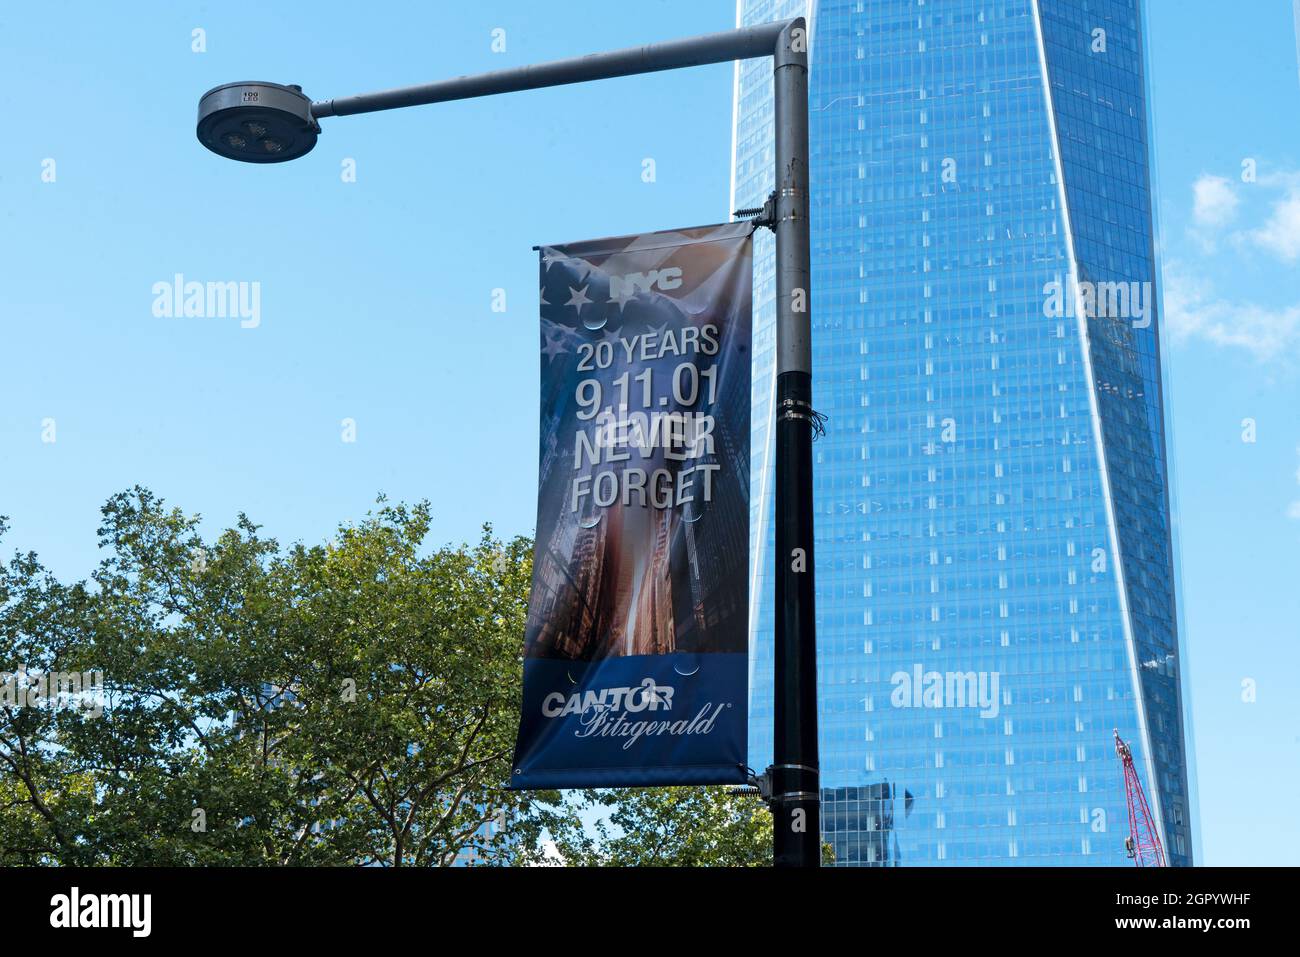 Nell'anniversario dell'attacco del World Trade Center, un cartello vicino a 1 World Trade Center ricorda i 658 dipendenti di Cantor Fitzgerald che sono morti quel giorno. Foto Stock